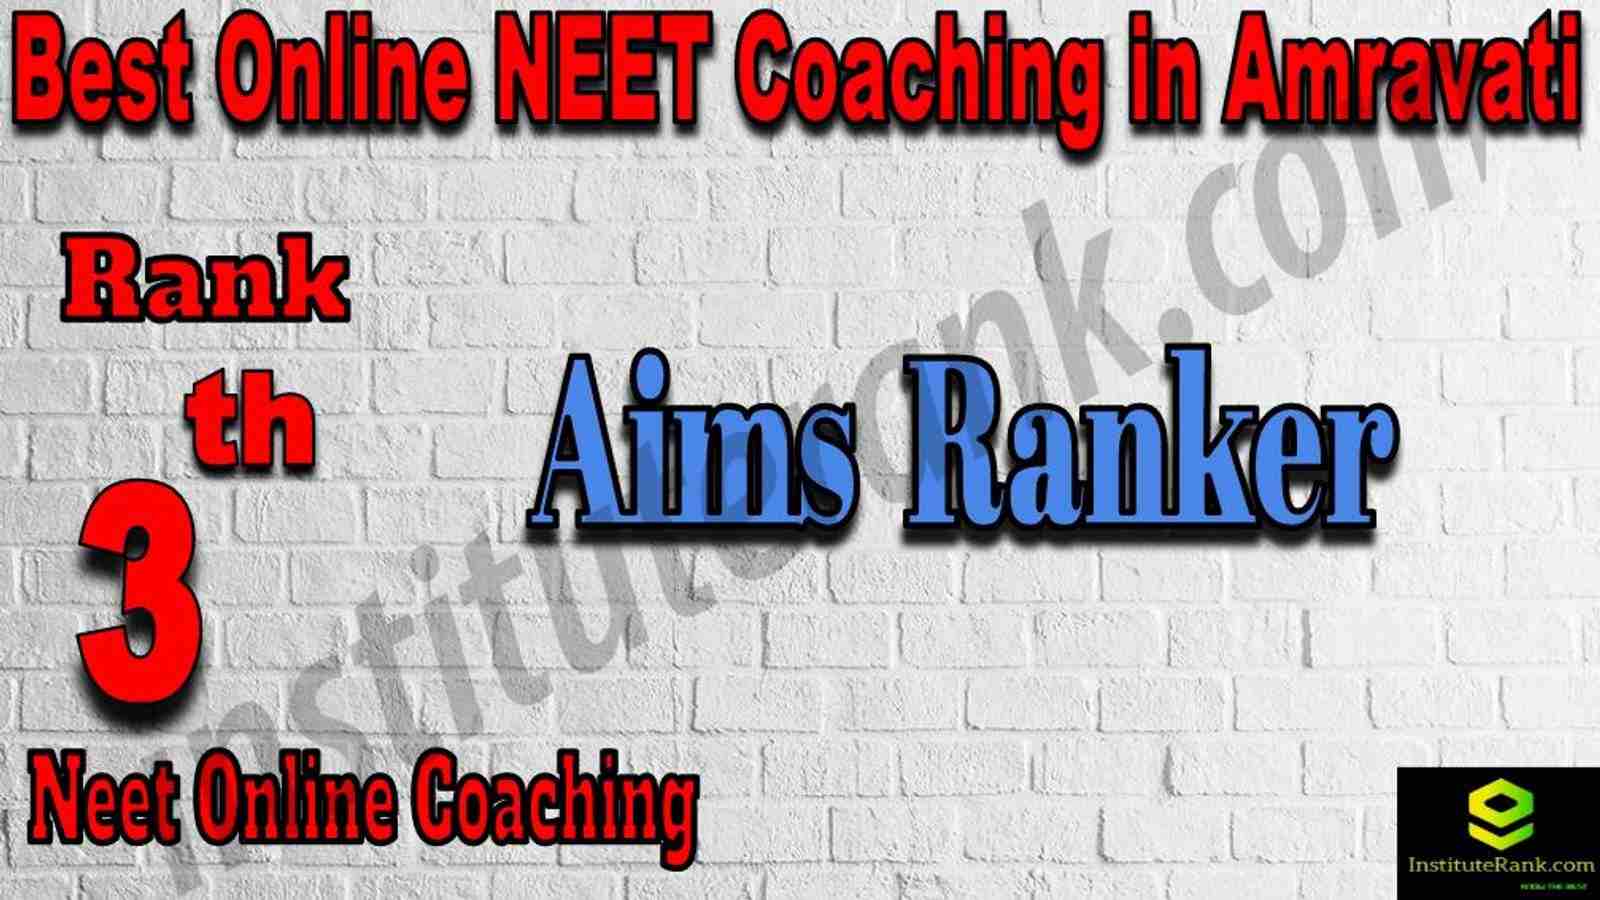 3rd Best Online Neet Coaching in Amravati